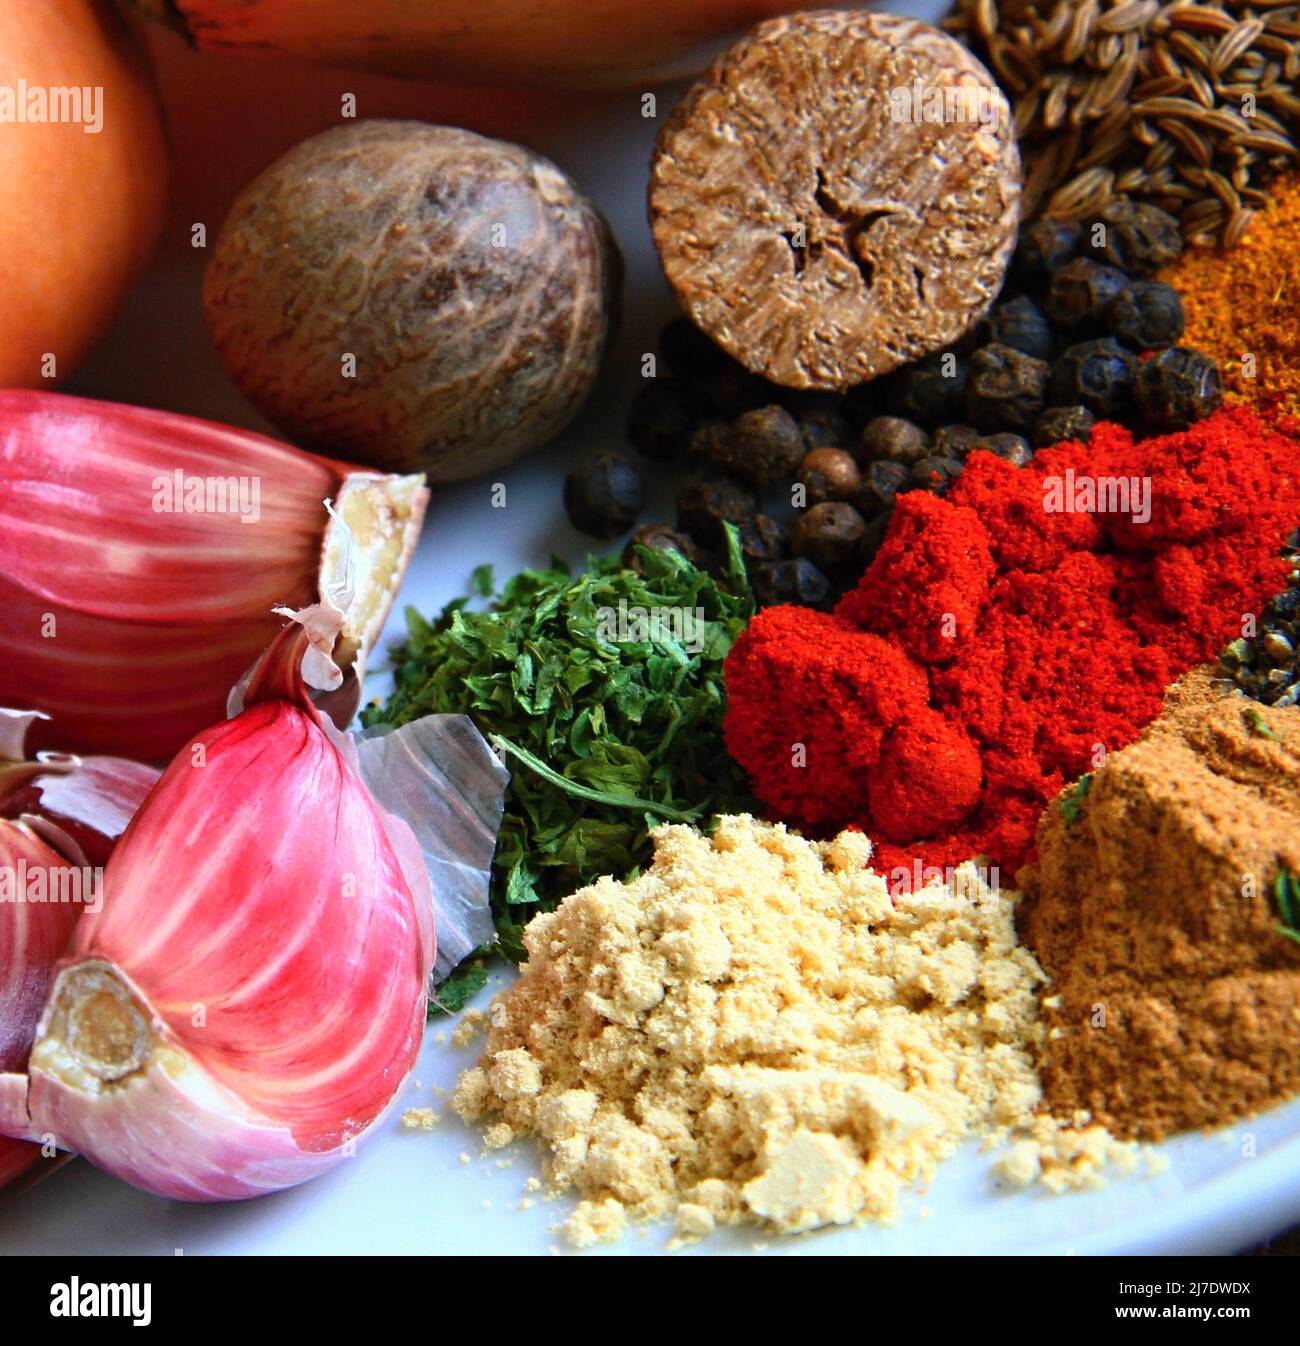 Würzige Zutaten wie Zwiebeln und Paprika sowie Foto von Knoblauchbrühe Stockfoto